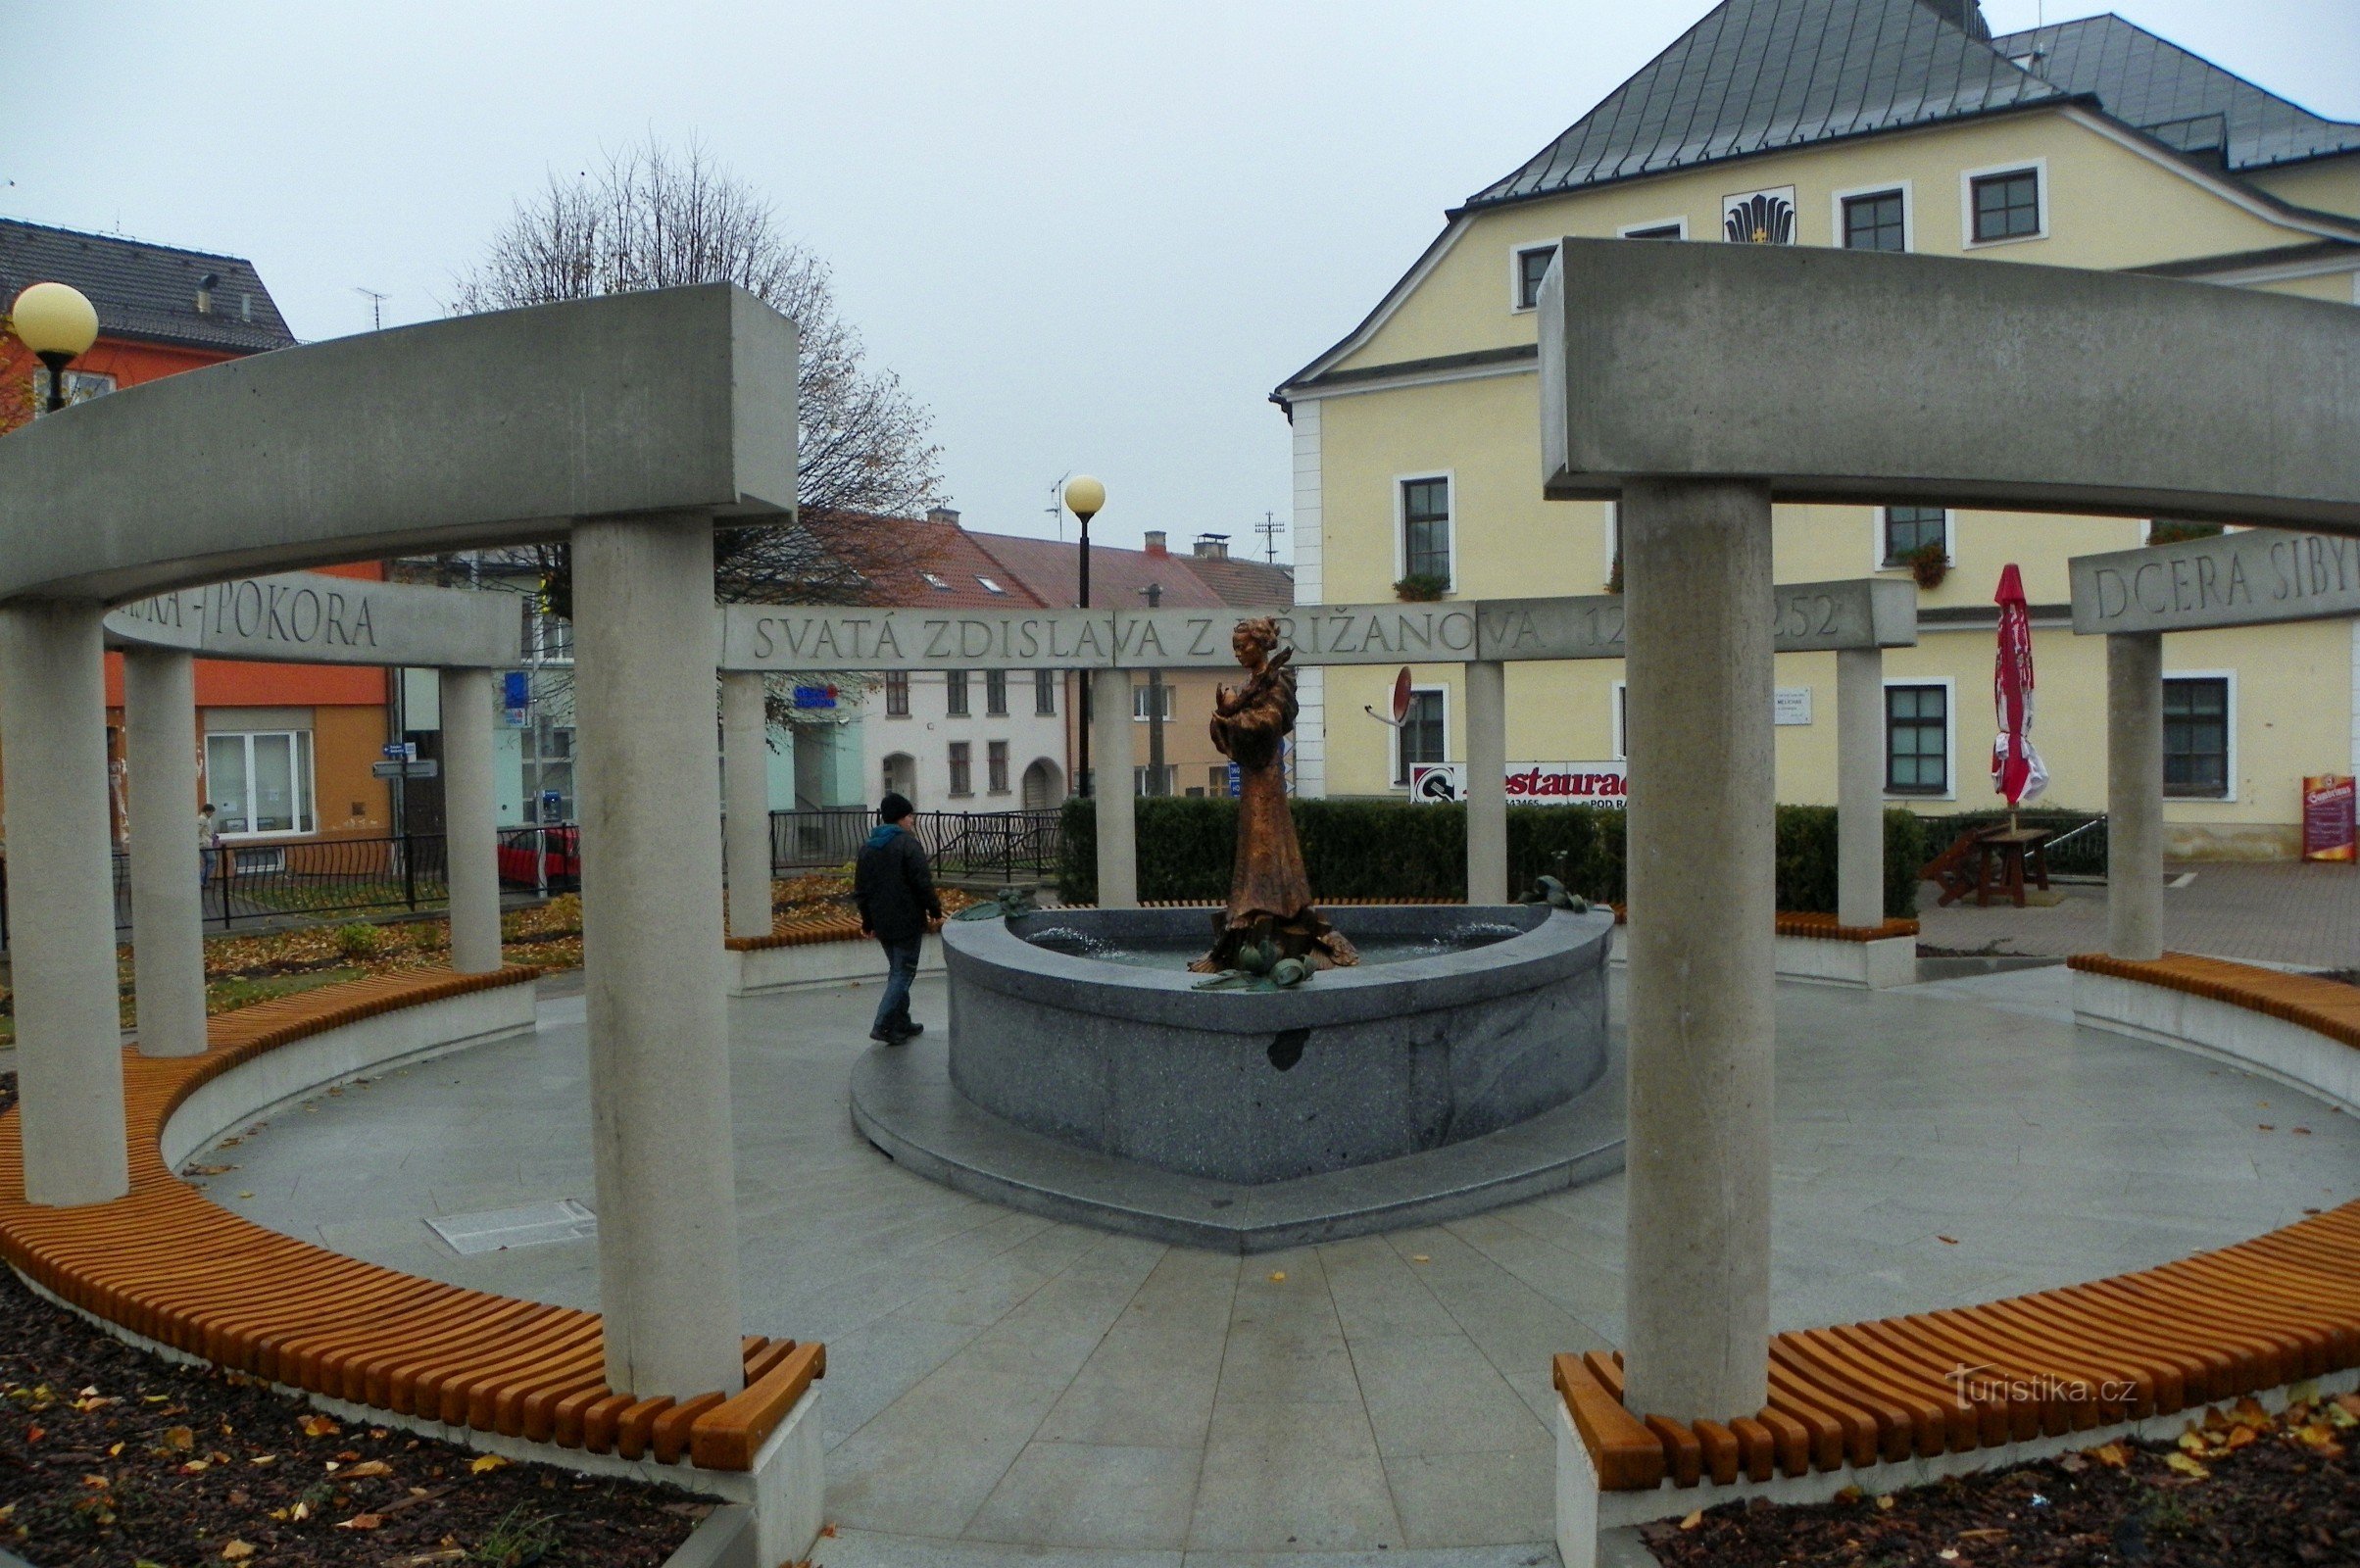 Monumento a S. Zdislava a Křižanov